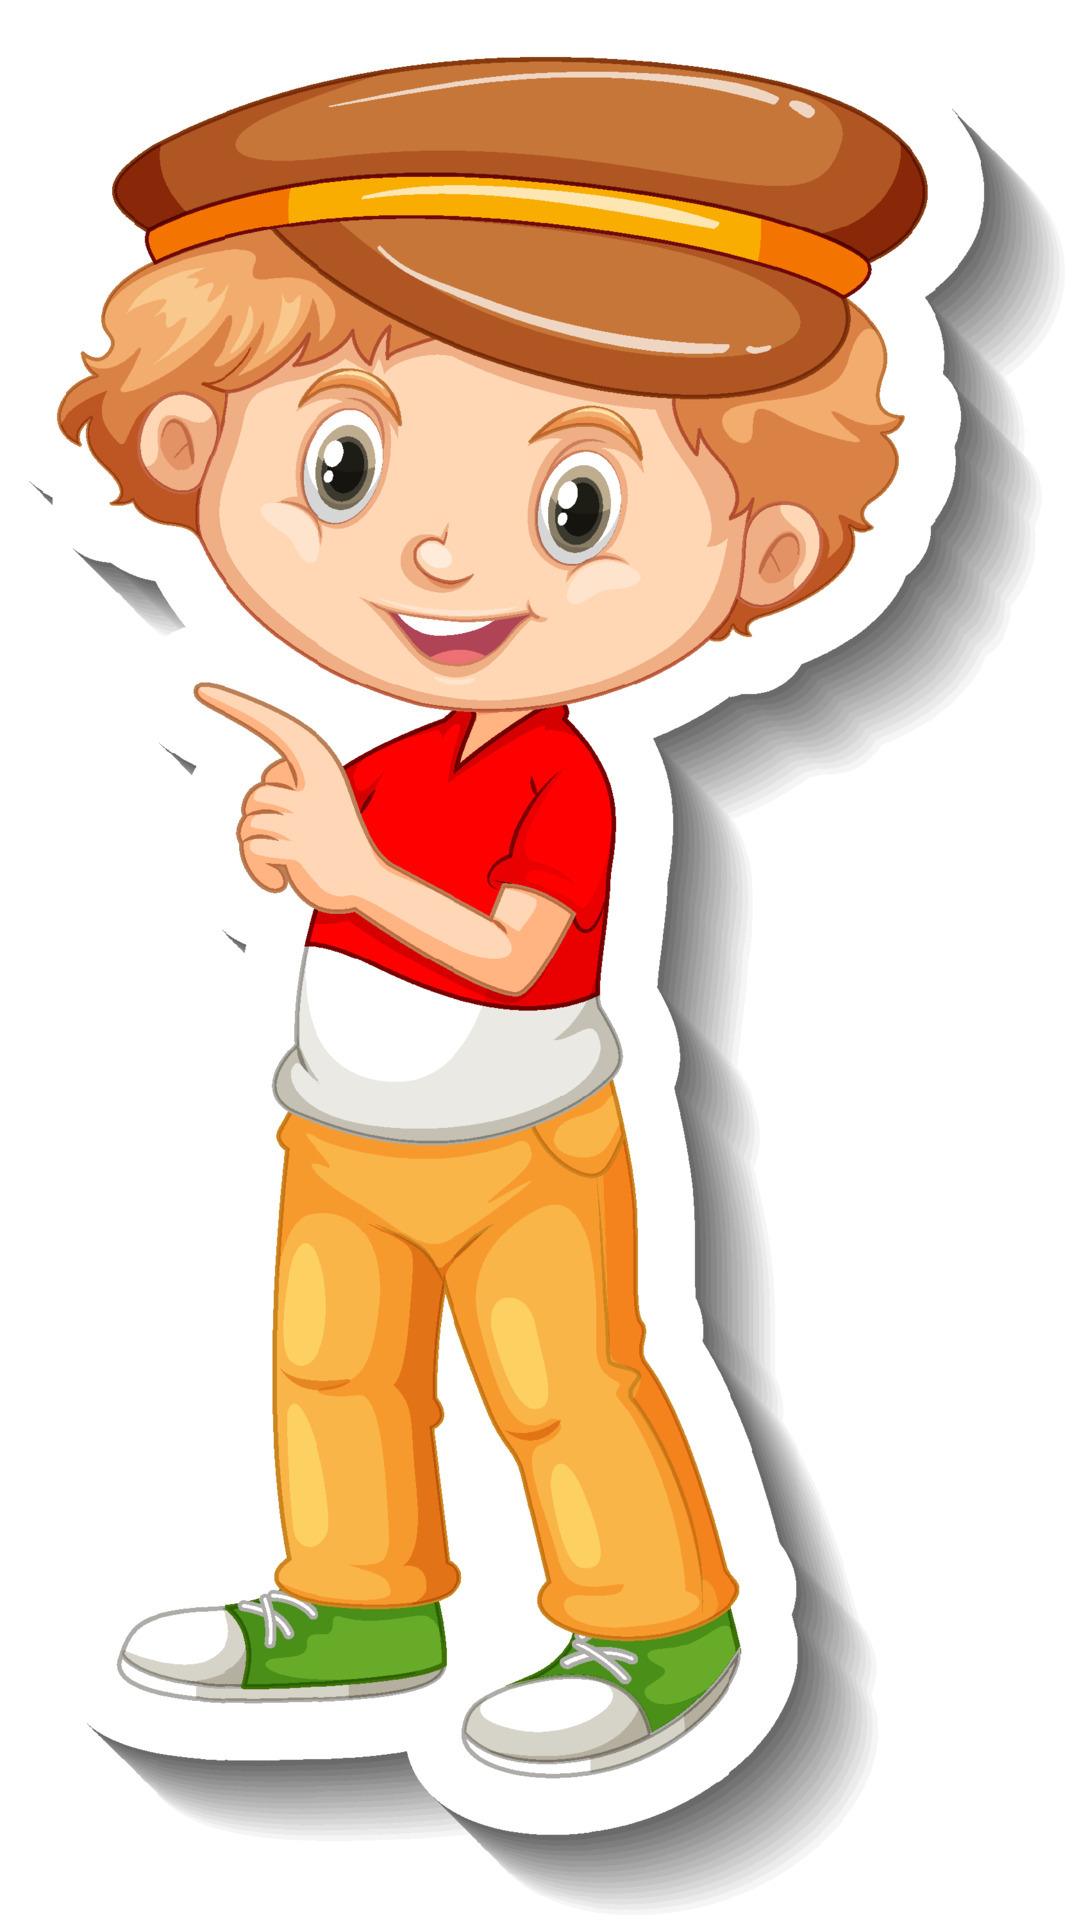 Blonde hair boy cartoon character sticker 4630149 Vector Art at Vecteezy